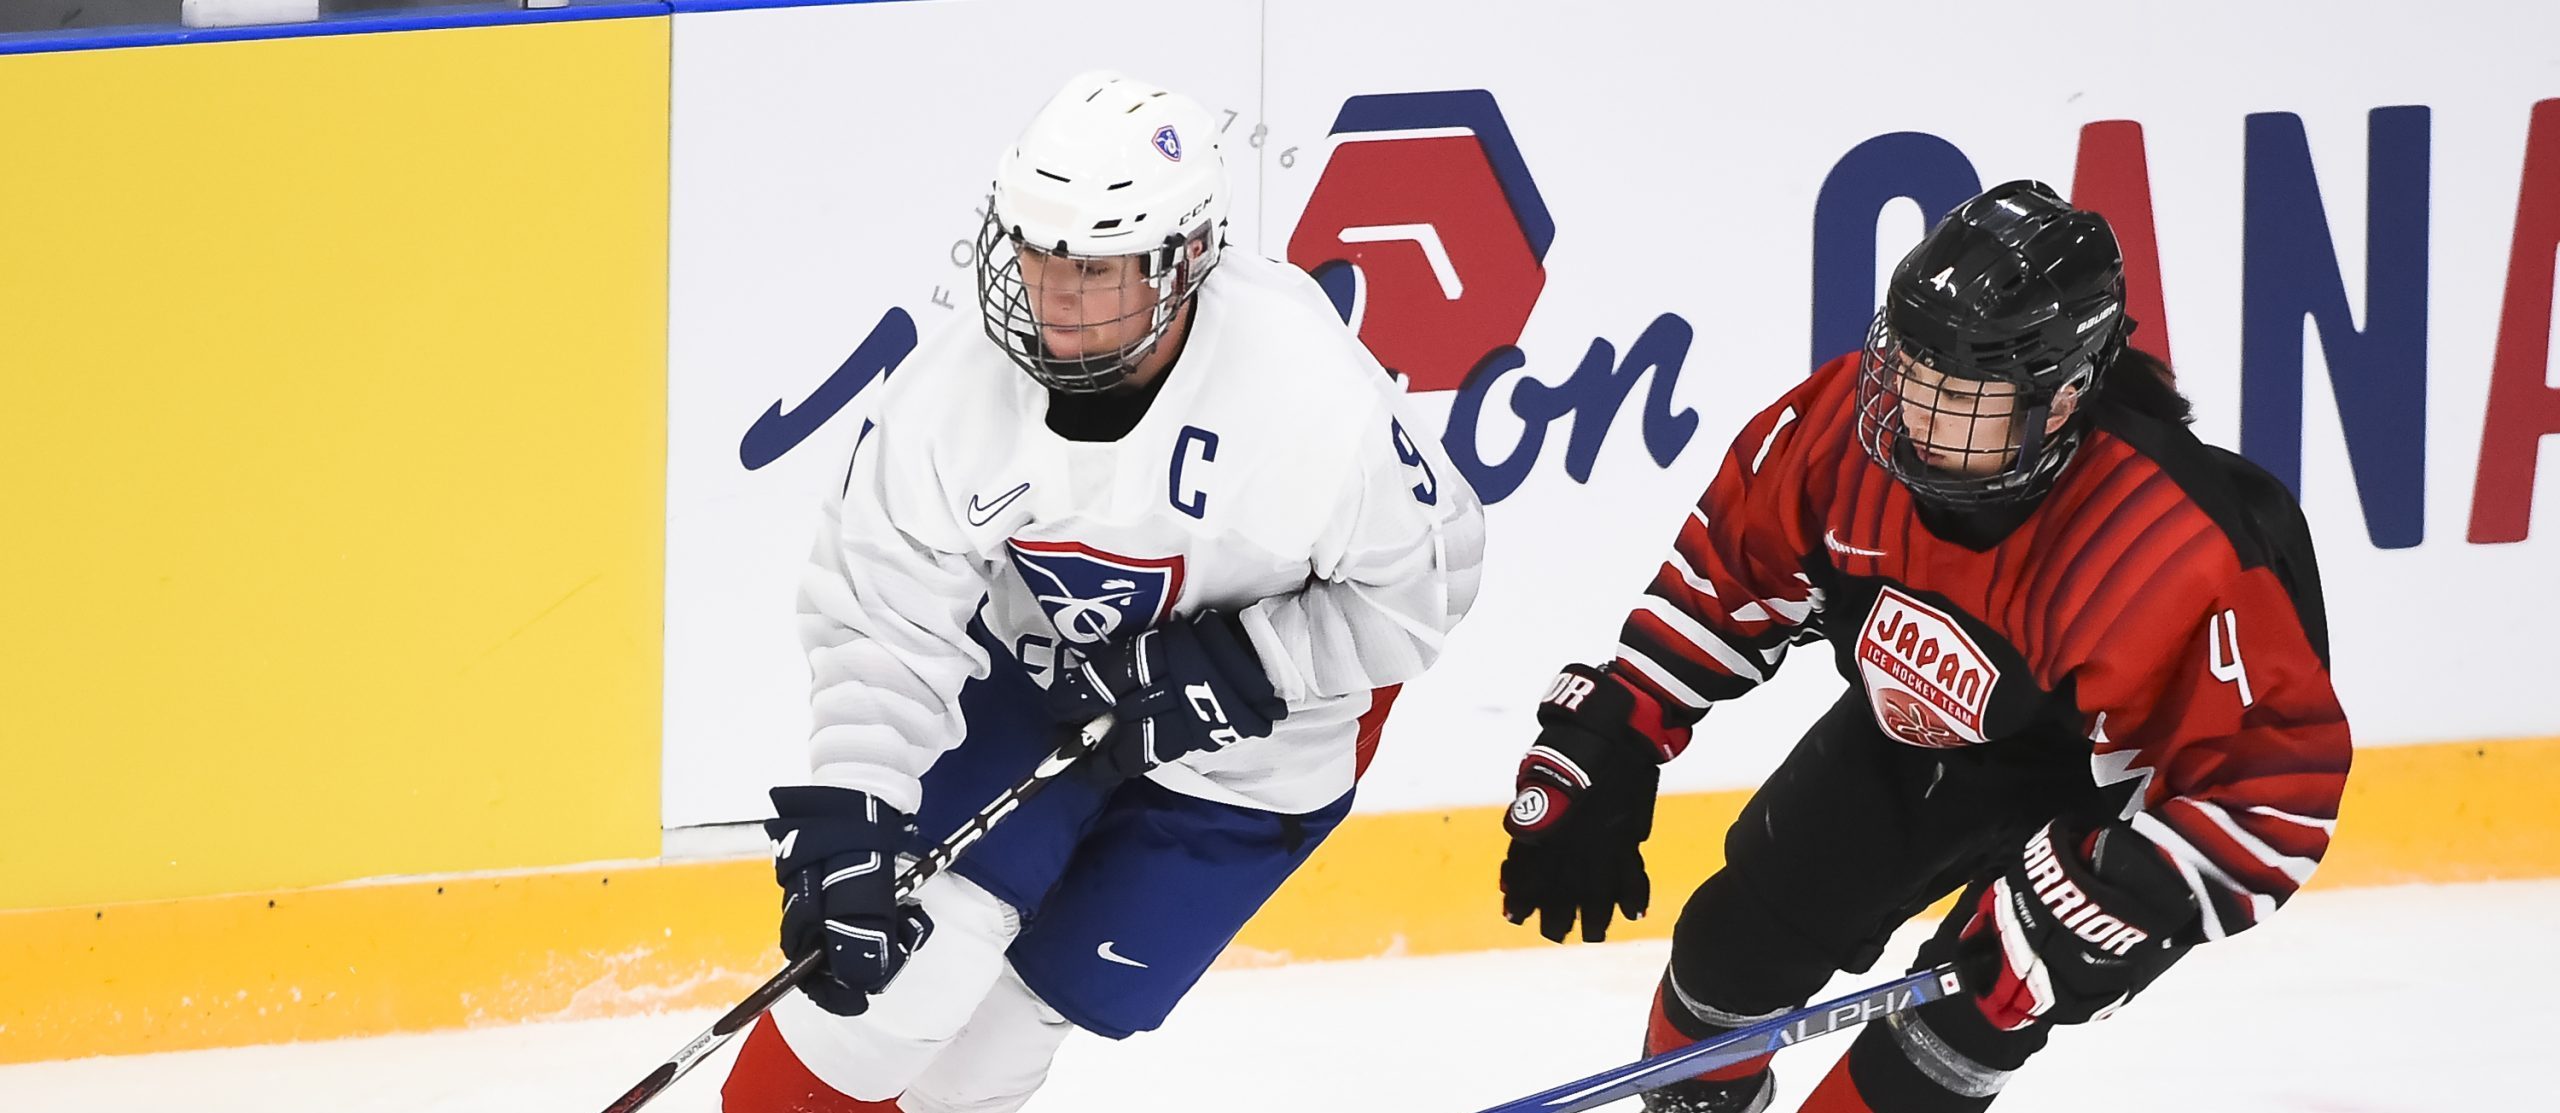 L'équipe de France de hockey sur glace tentera de décrocher son billet pour les Jeux olympiques de Pékin 2022